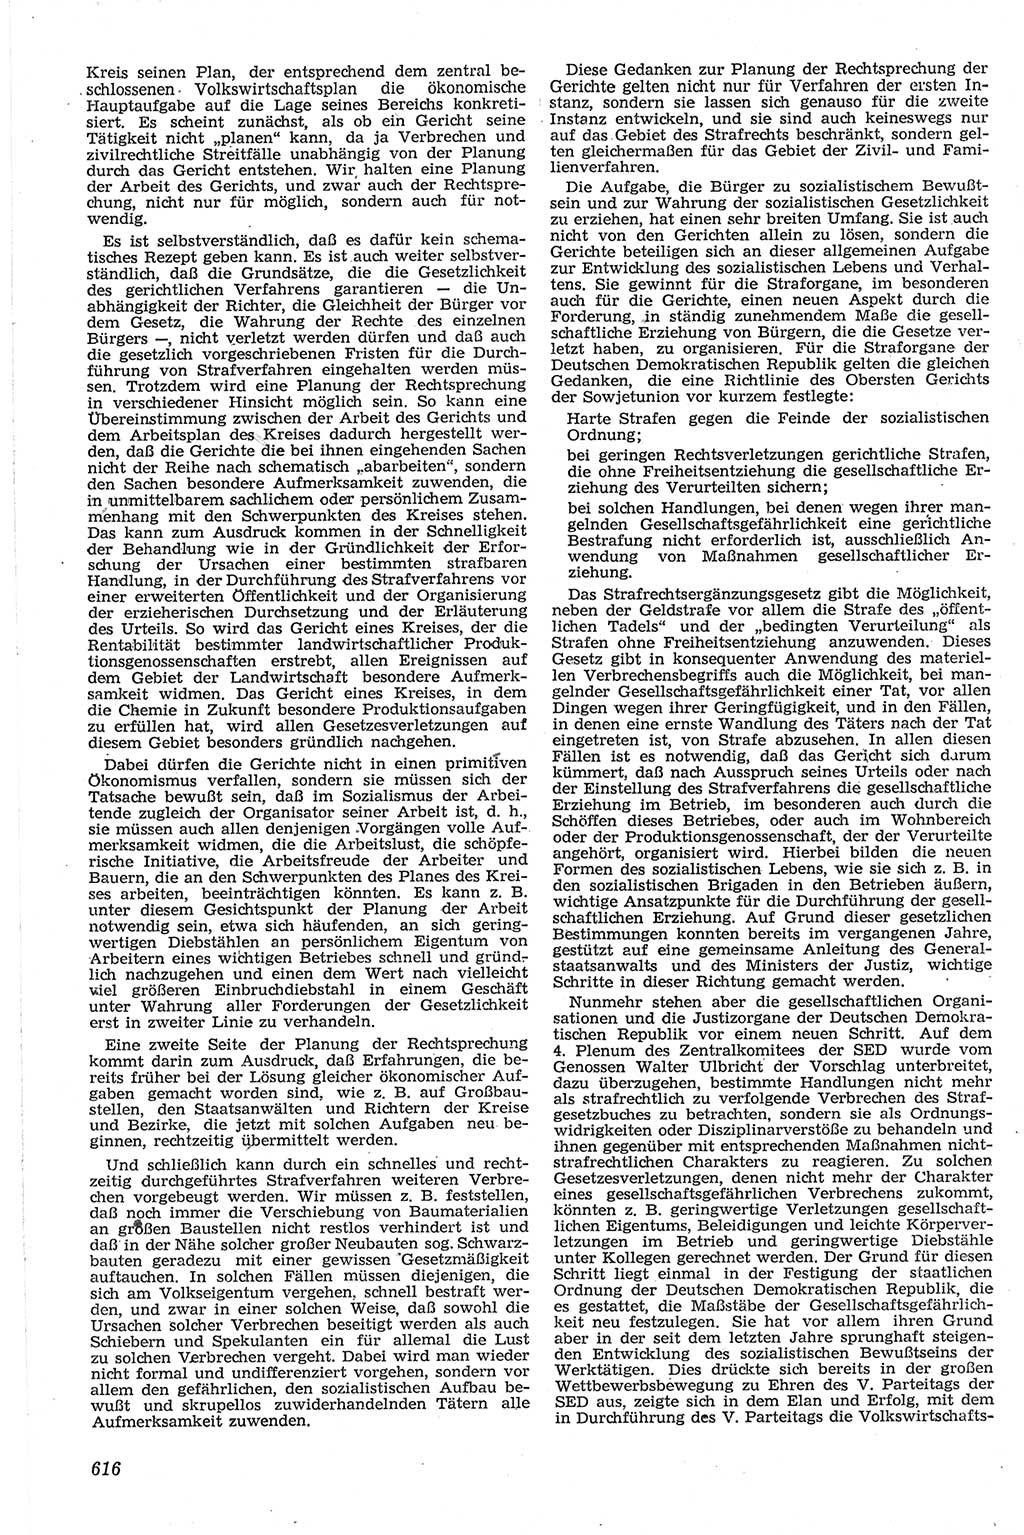 Neue Justiz (NJ), Zeitschrift für Recht und Rechtswissenschaft [Deutsche Demokratische Republik (DDR)], 13. Jahrgang 1959, Seite 616 (NJ DDR 1959, S. 616)